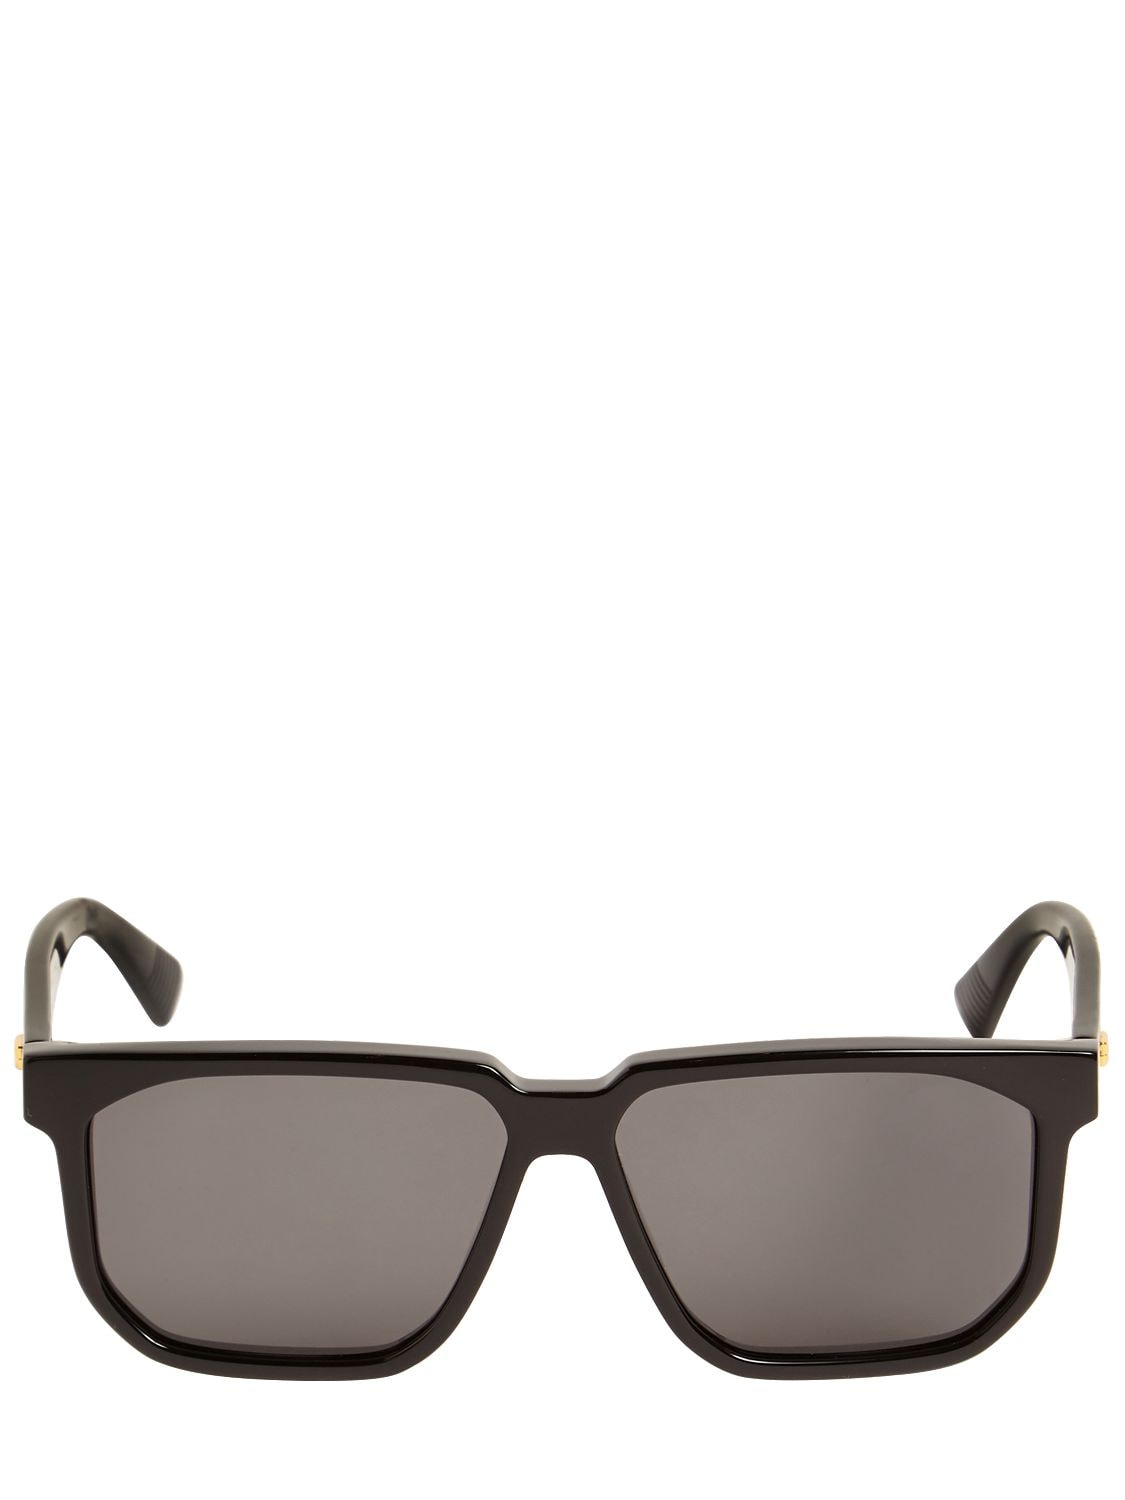 Bottega Veneta Bv1033s Squared Acetate Sunglasses In Black,grey